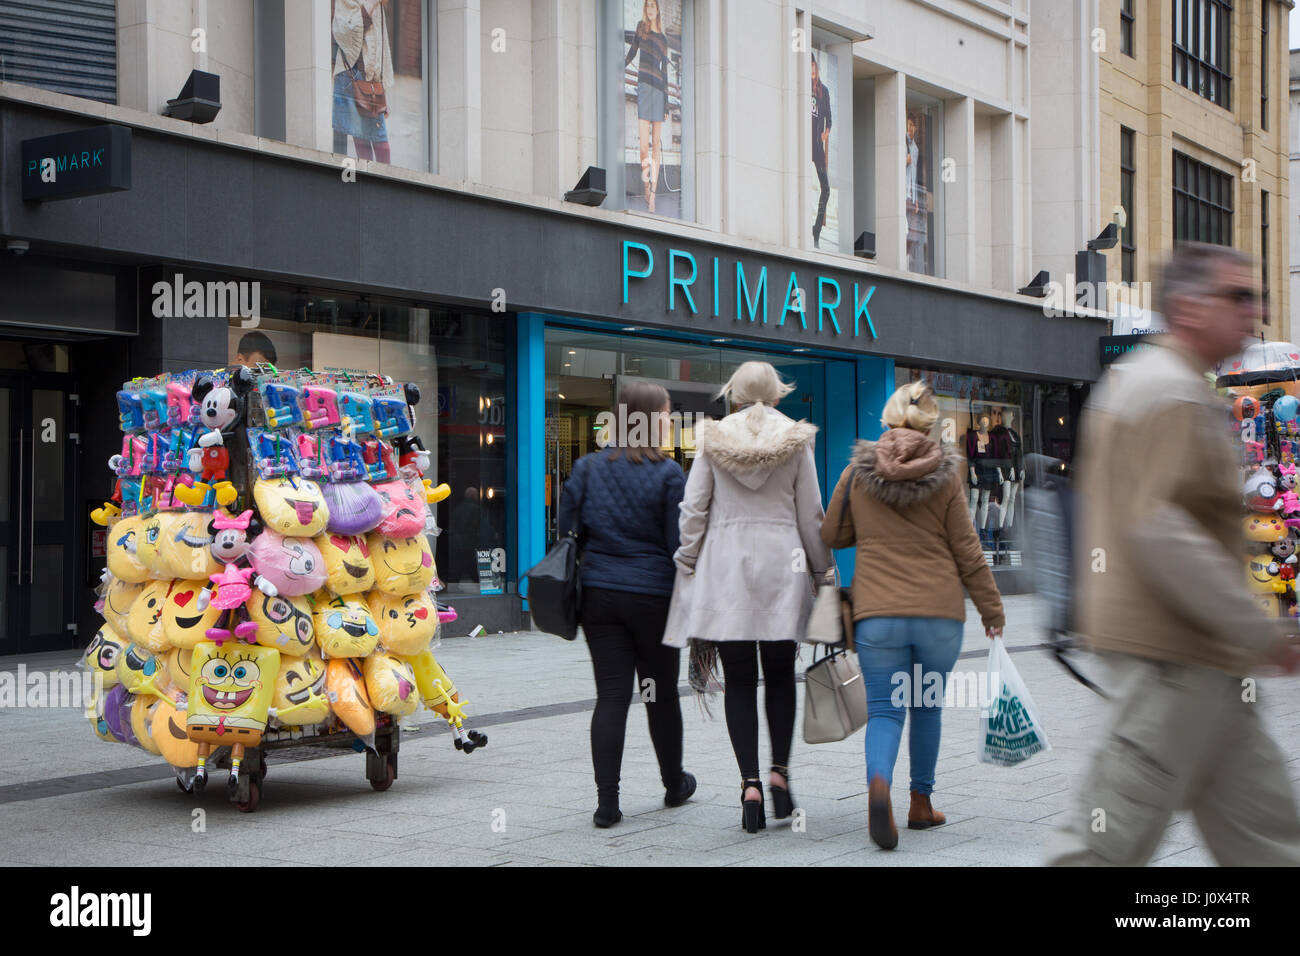 Primark auf Queen Street, Cardiff. Händler im Vordergrund sind Emoji Kissen etc. verkaufen. Stockfoto